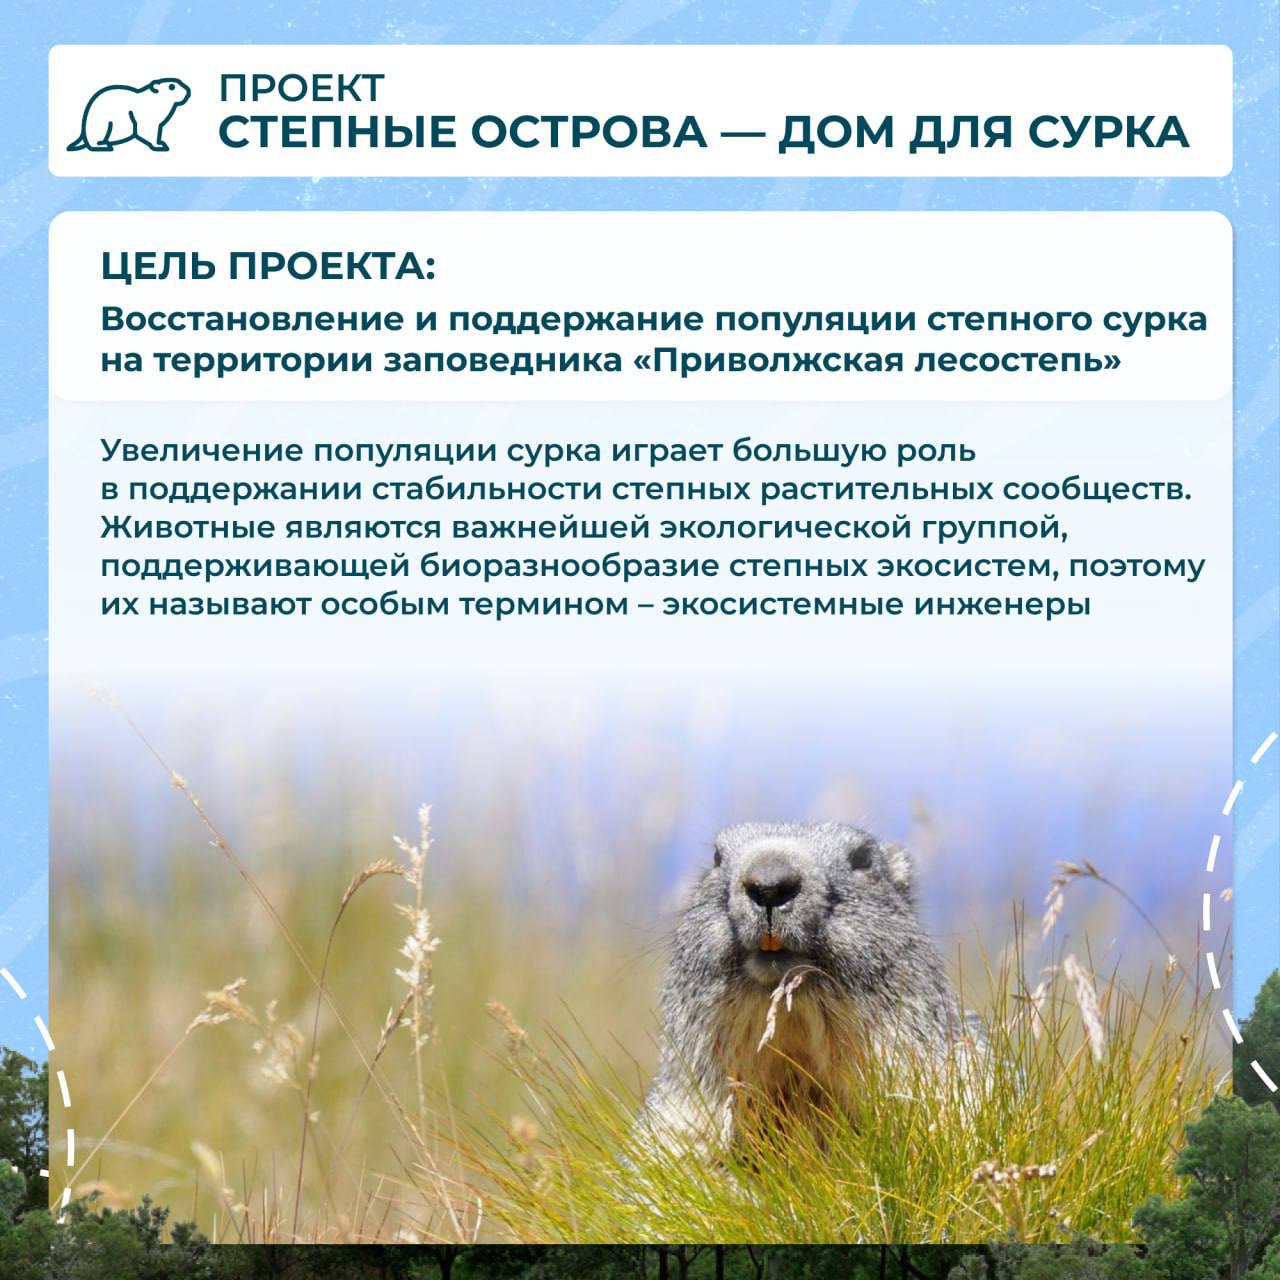 Олег Мельниченко отметил работу ученых по сохранению «Приволжской лесостепи»